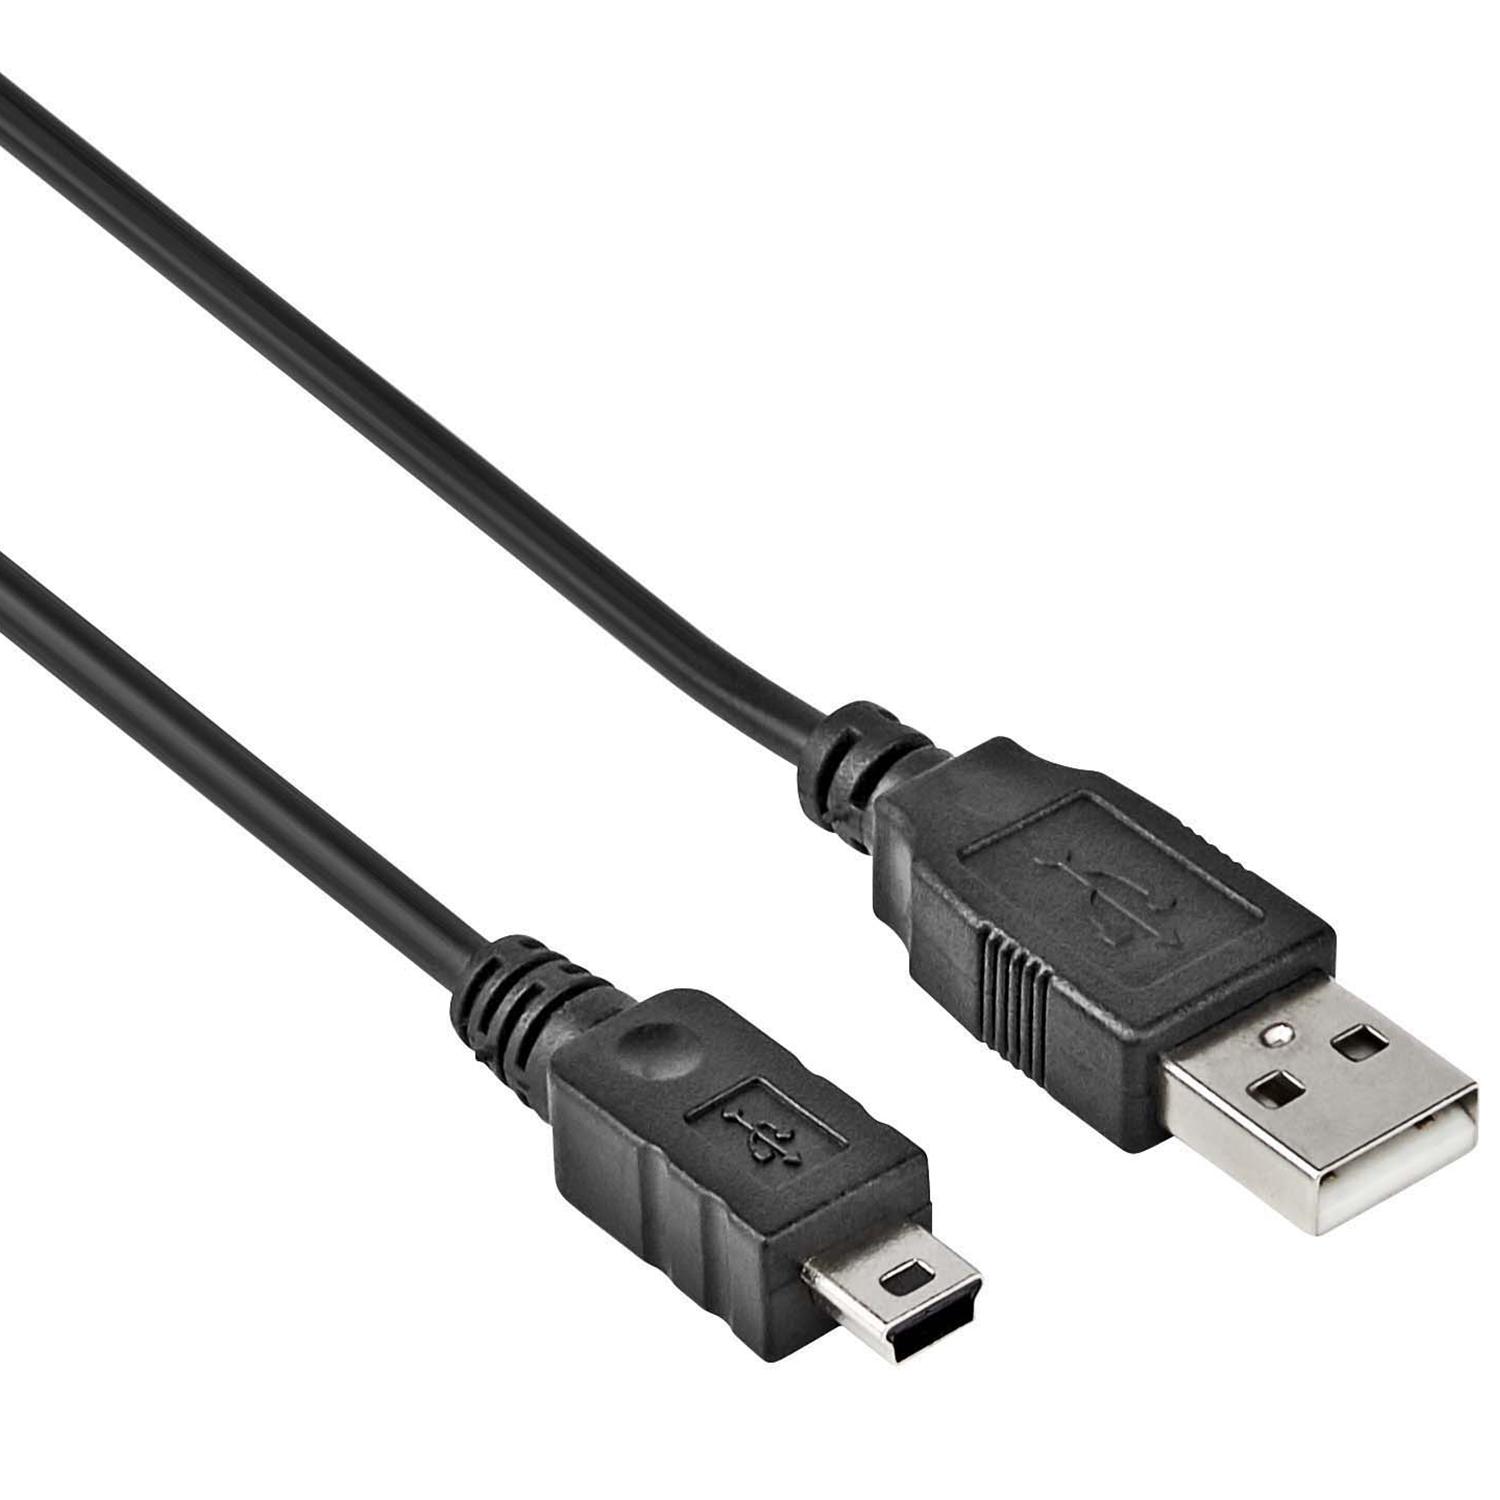 USB Mini datakabel - 0.15 meter - Allteq